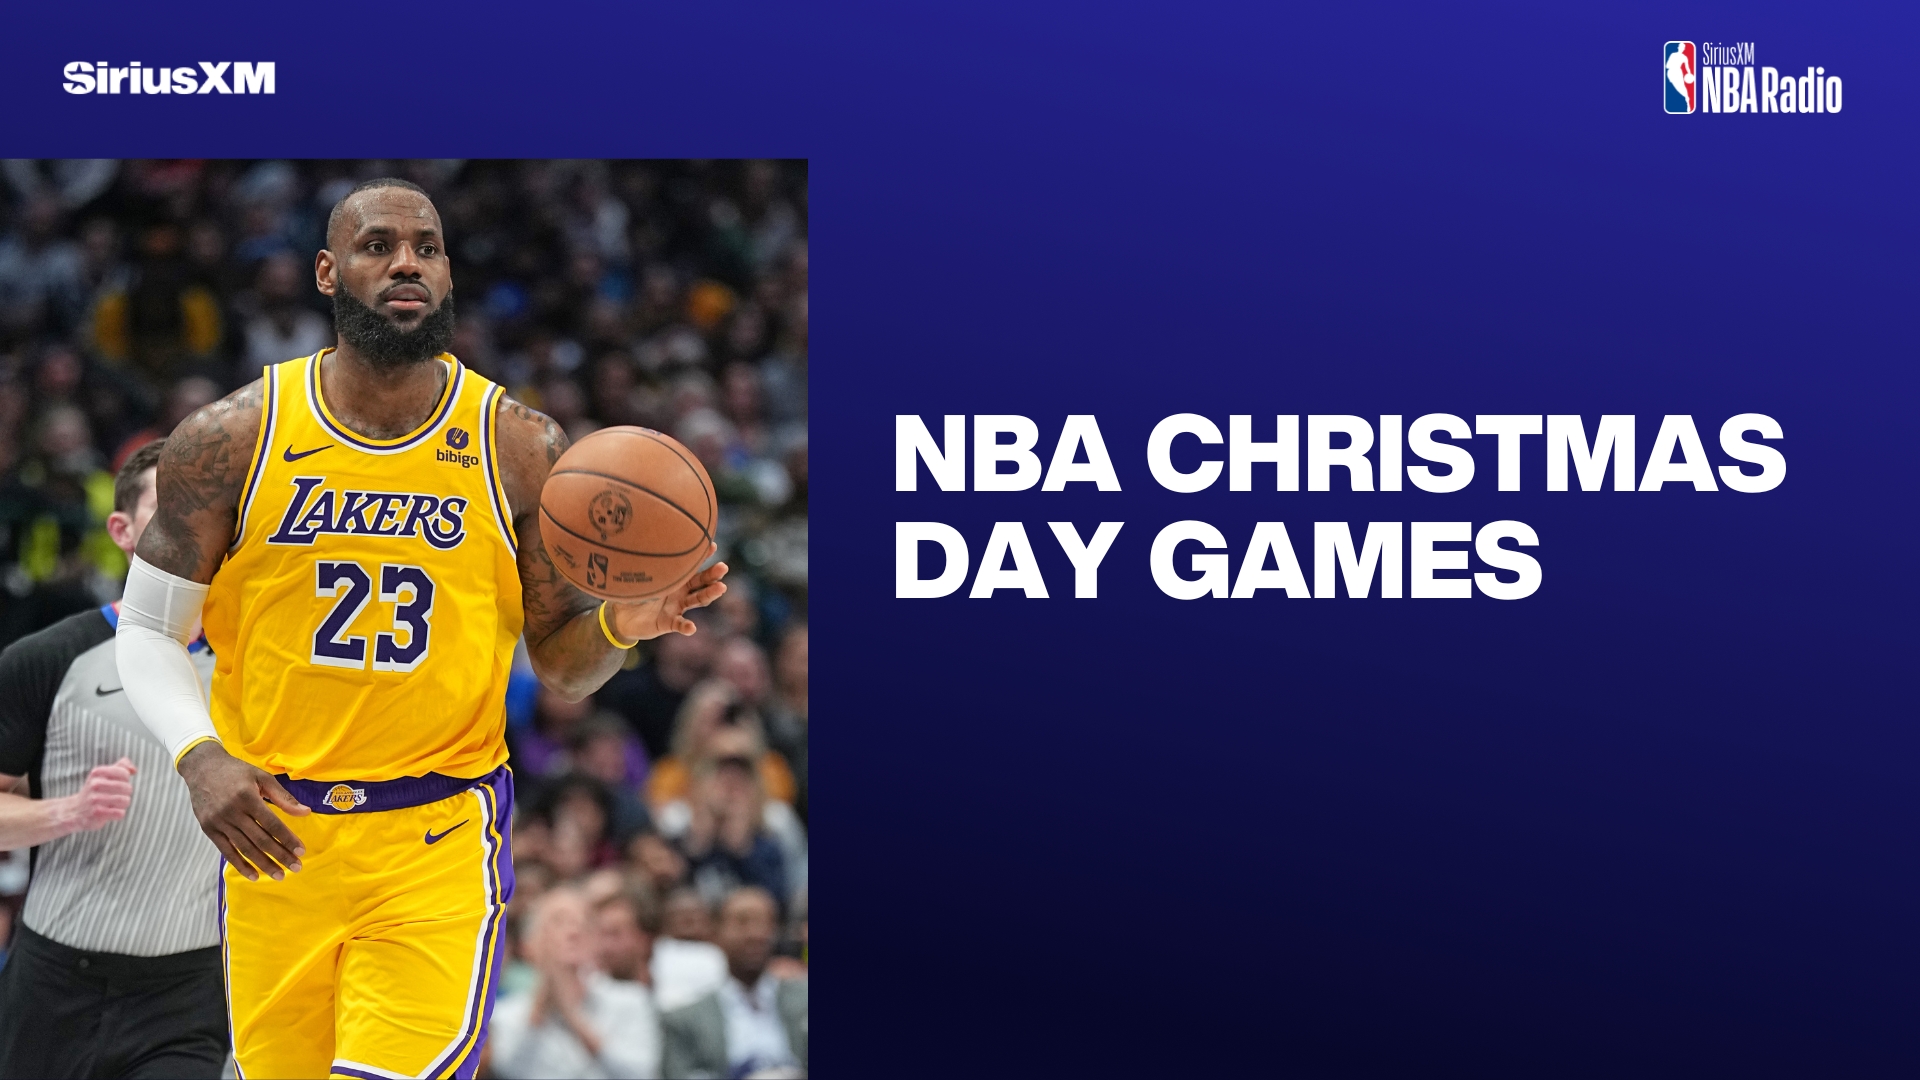 NBA Christmas Day Games